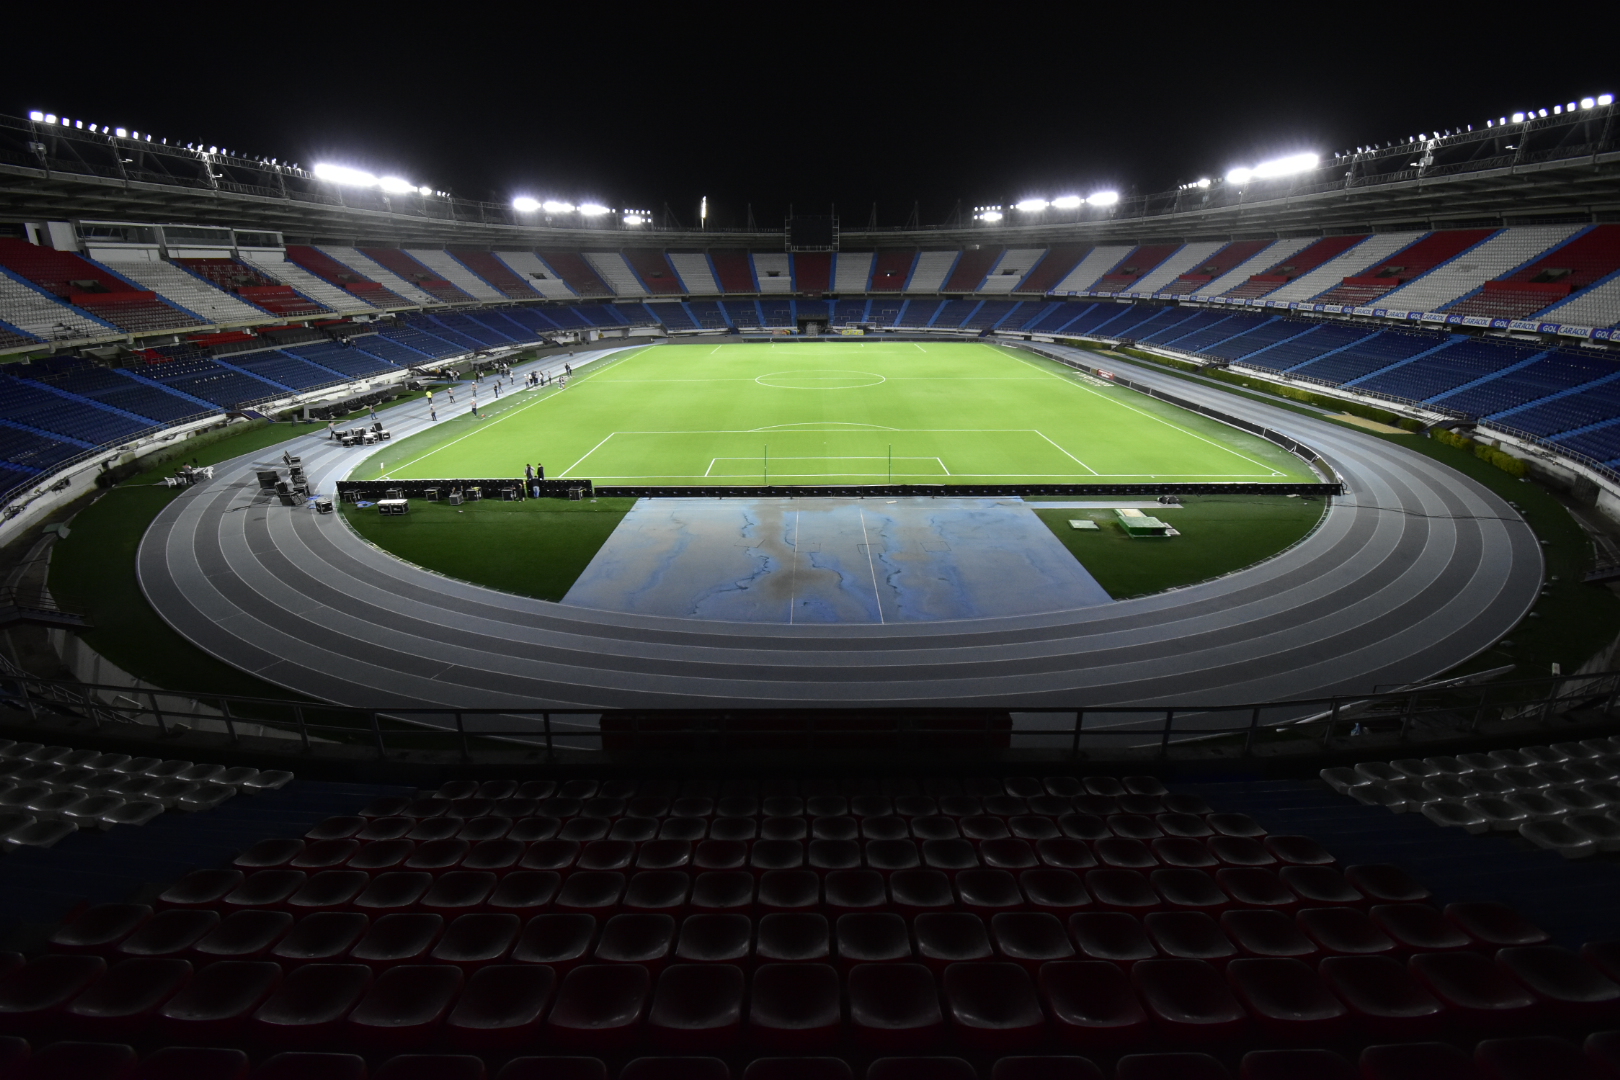 Sistema de luces led ya ilumina el estadio Metropolitano Roberto Meléndez – @alcaldiabquilla